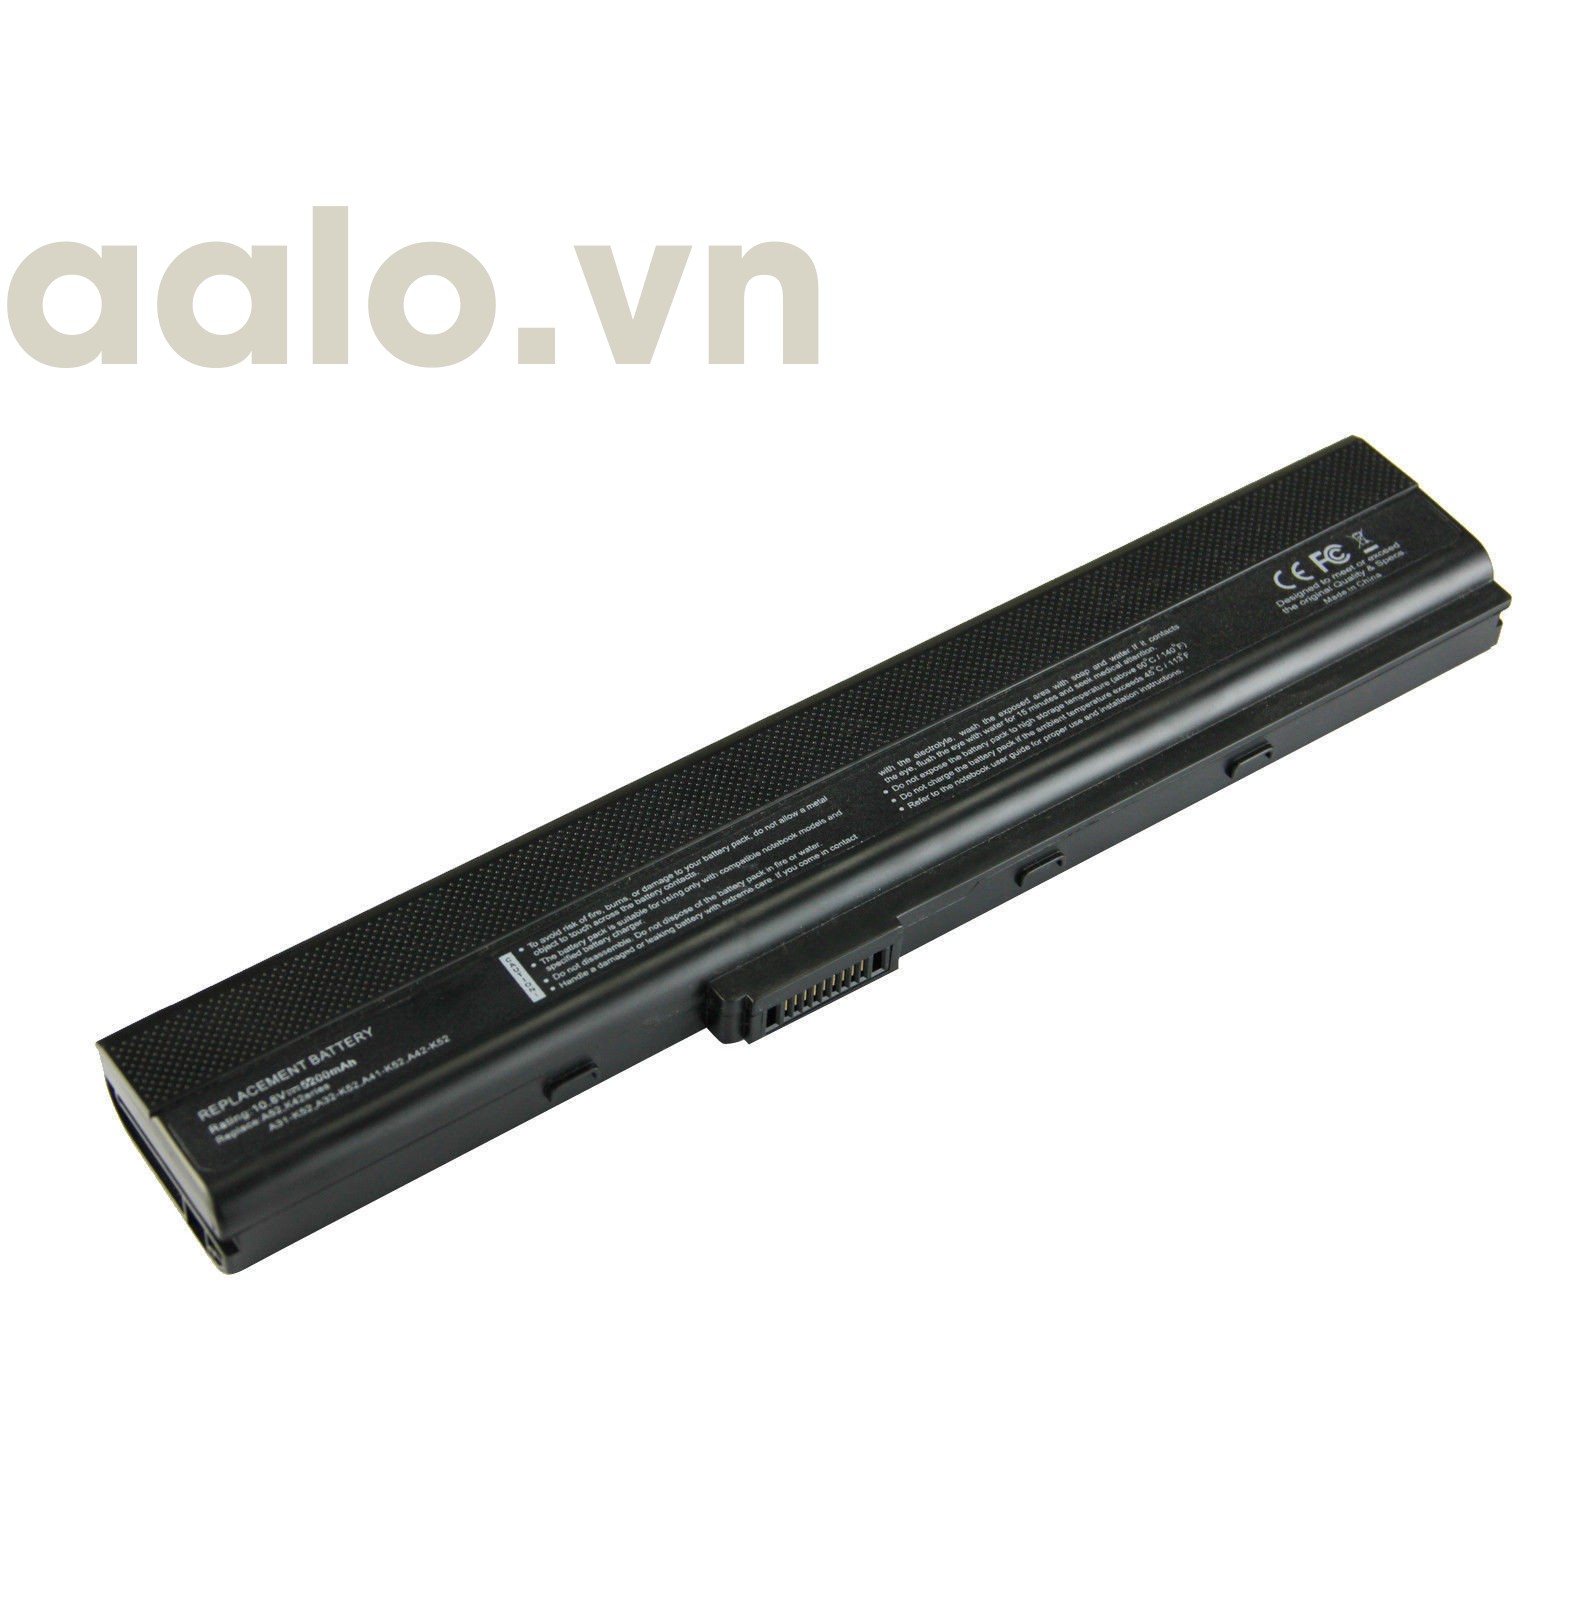 Pin Laptop Asus K42 K52 - aalo.vn